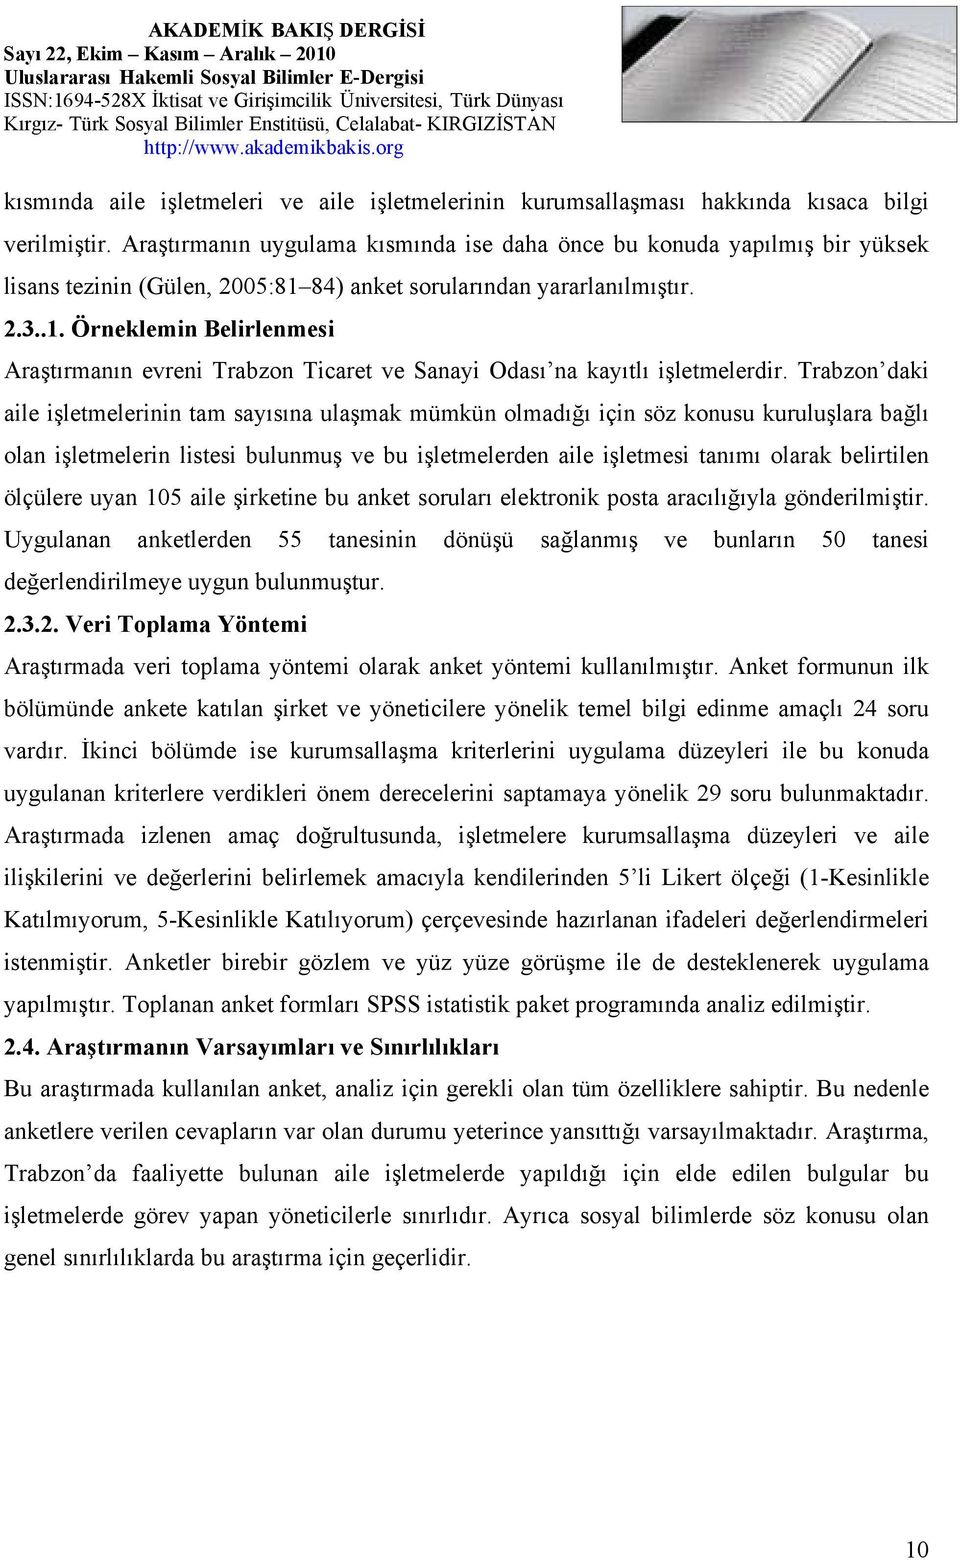 84) anket sorularından yararlanılmıştır....1. Örneklemin Belirlenmesi Araştırmanın evreni Trabzon Ticaret ve Sanayi Odası na kayıtlı işletmelerdir.